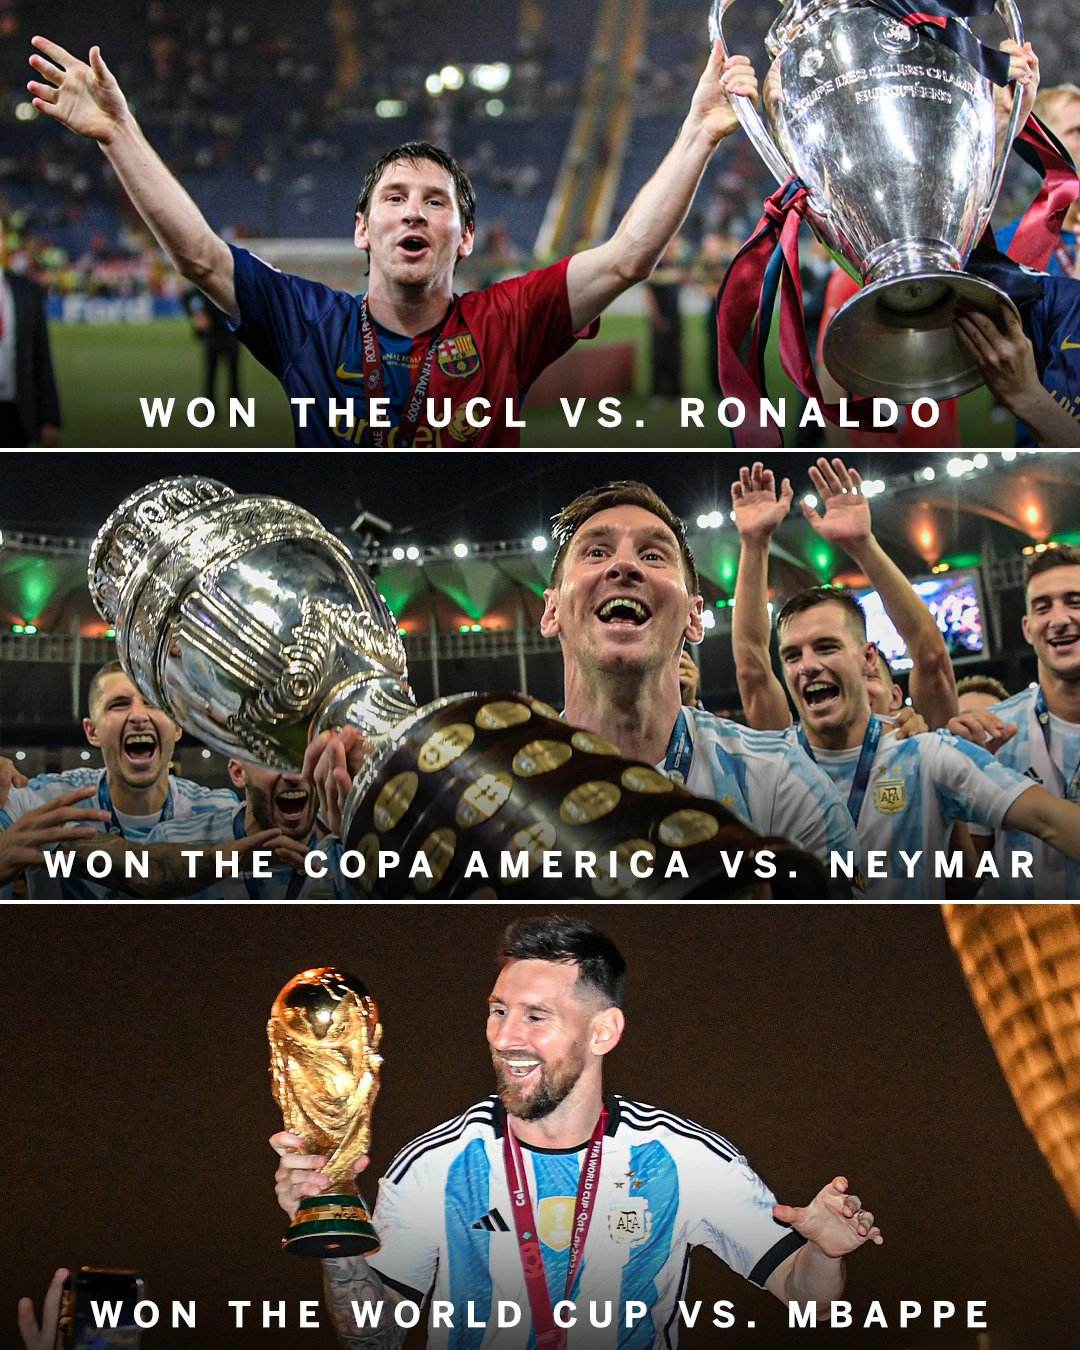 Đừng bỏ lỡ ảnh Messi meme với các hình ảnh siêu hài hước về cuộc đời tuyệt vời của Messi trên sân cỏ. Từ tình huống ghi bàn mở tỷ số cho đến những câu châm biếm vui nhộn, tất cả được tái hiện qua những ảnh meme hài hước và độc đáo.